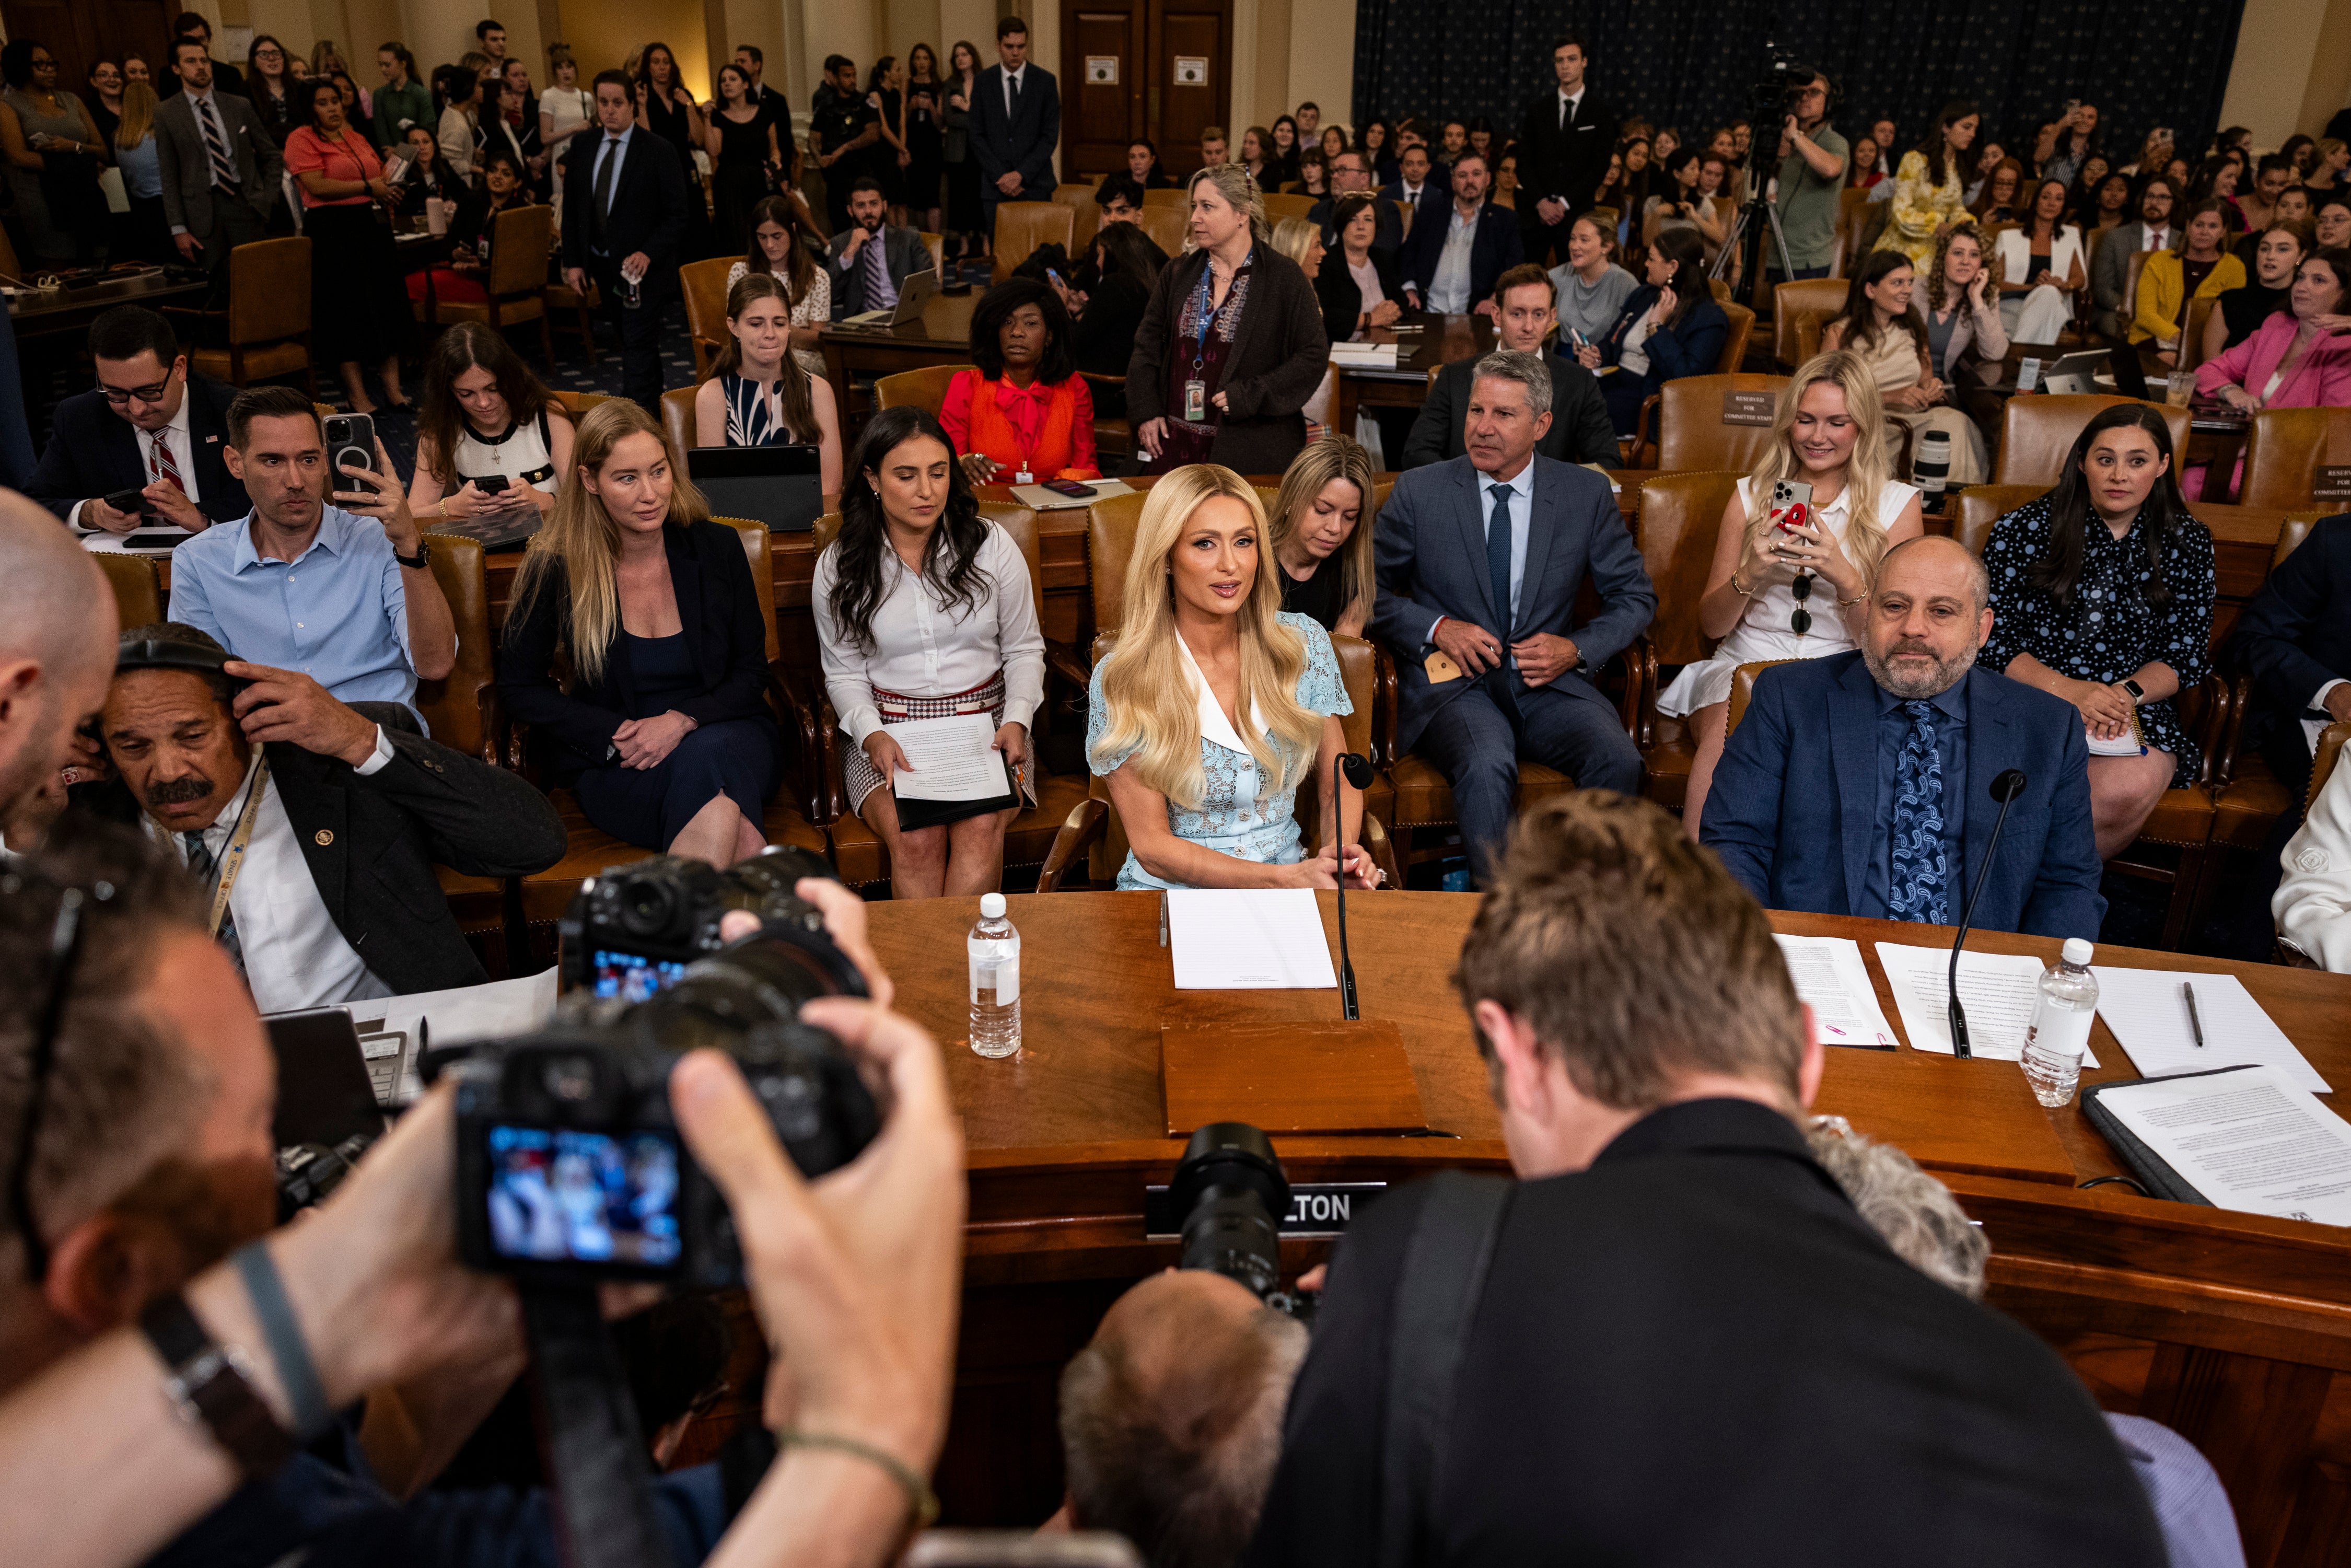 Paris Hilton asiste el miércoles a una audiencia del Comité de Medios y Arbitrios de la Cámara de Representantes. La heredera testificó ante el Congreso en 2021 y abogó por una “Declaración de Derechos” para los niños en internados de tratamiento juvenil